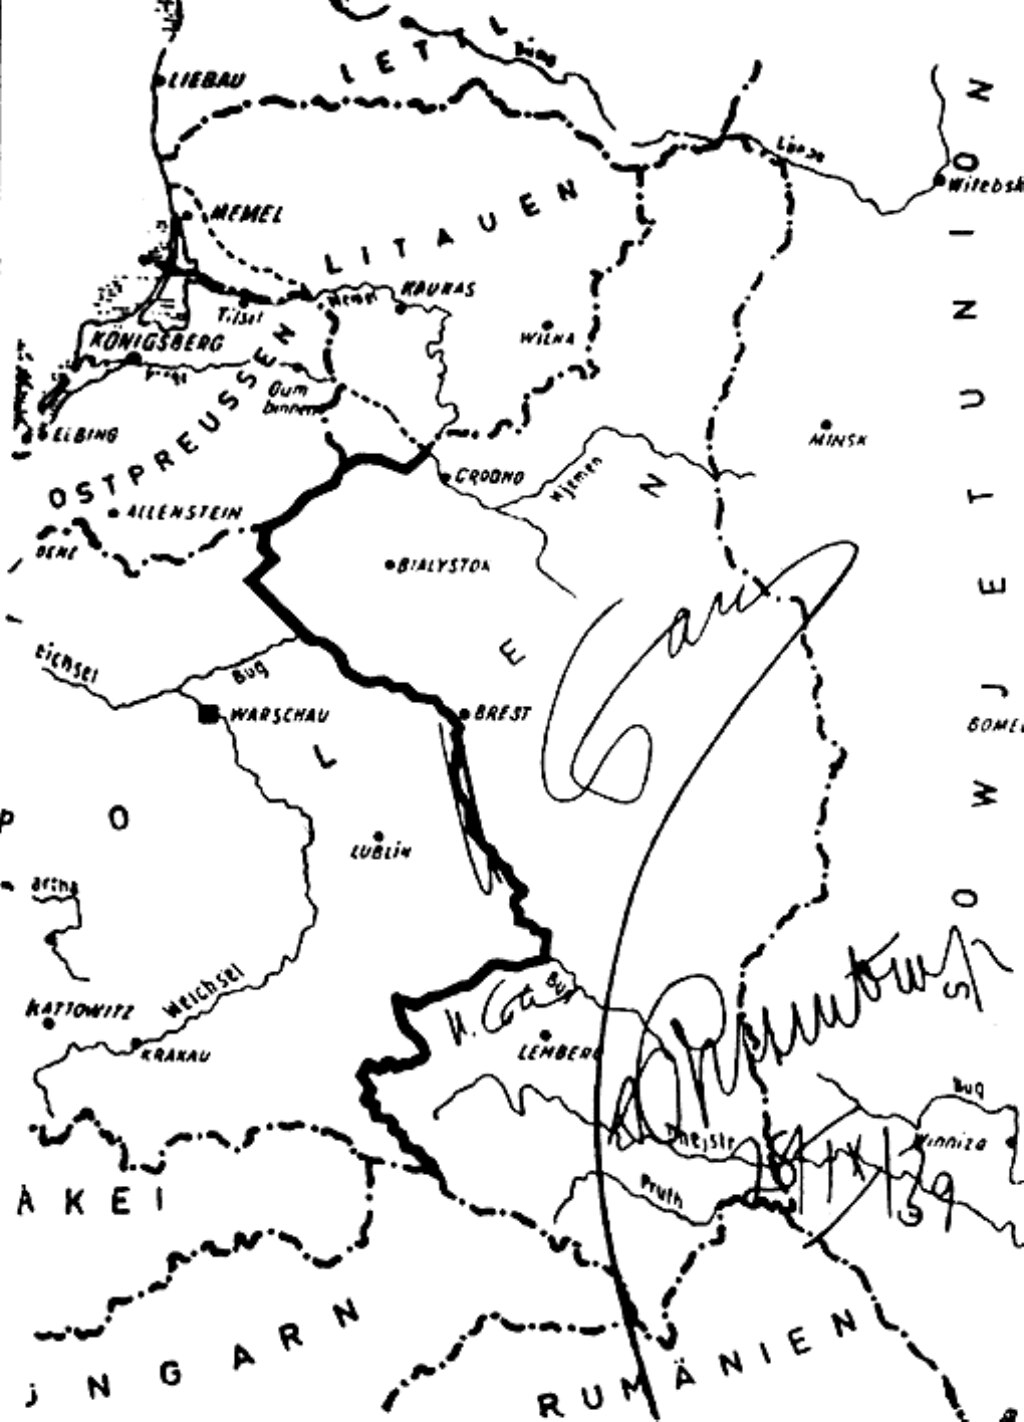 1939 елда Польшага каршы сугыш башлау турында килешүнең Сталин һәм Риббентроп имзалаган харитасы.